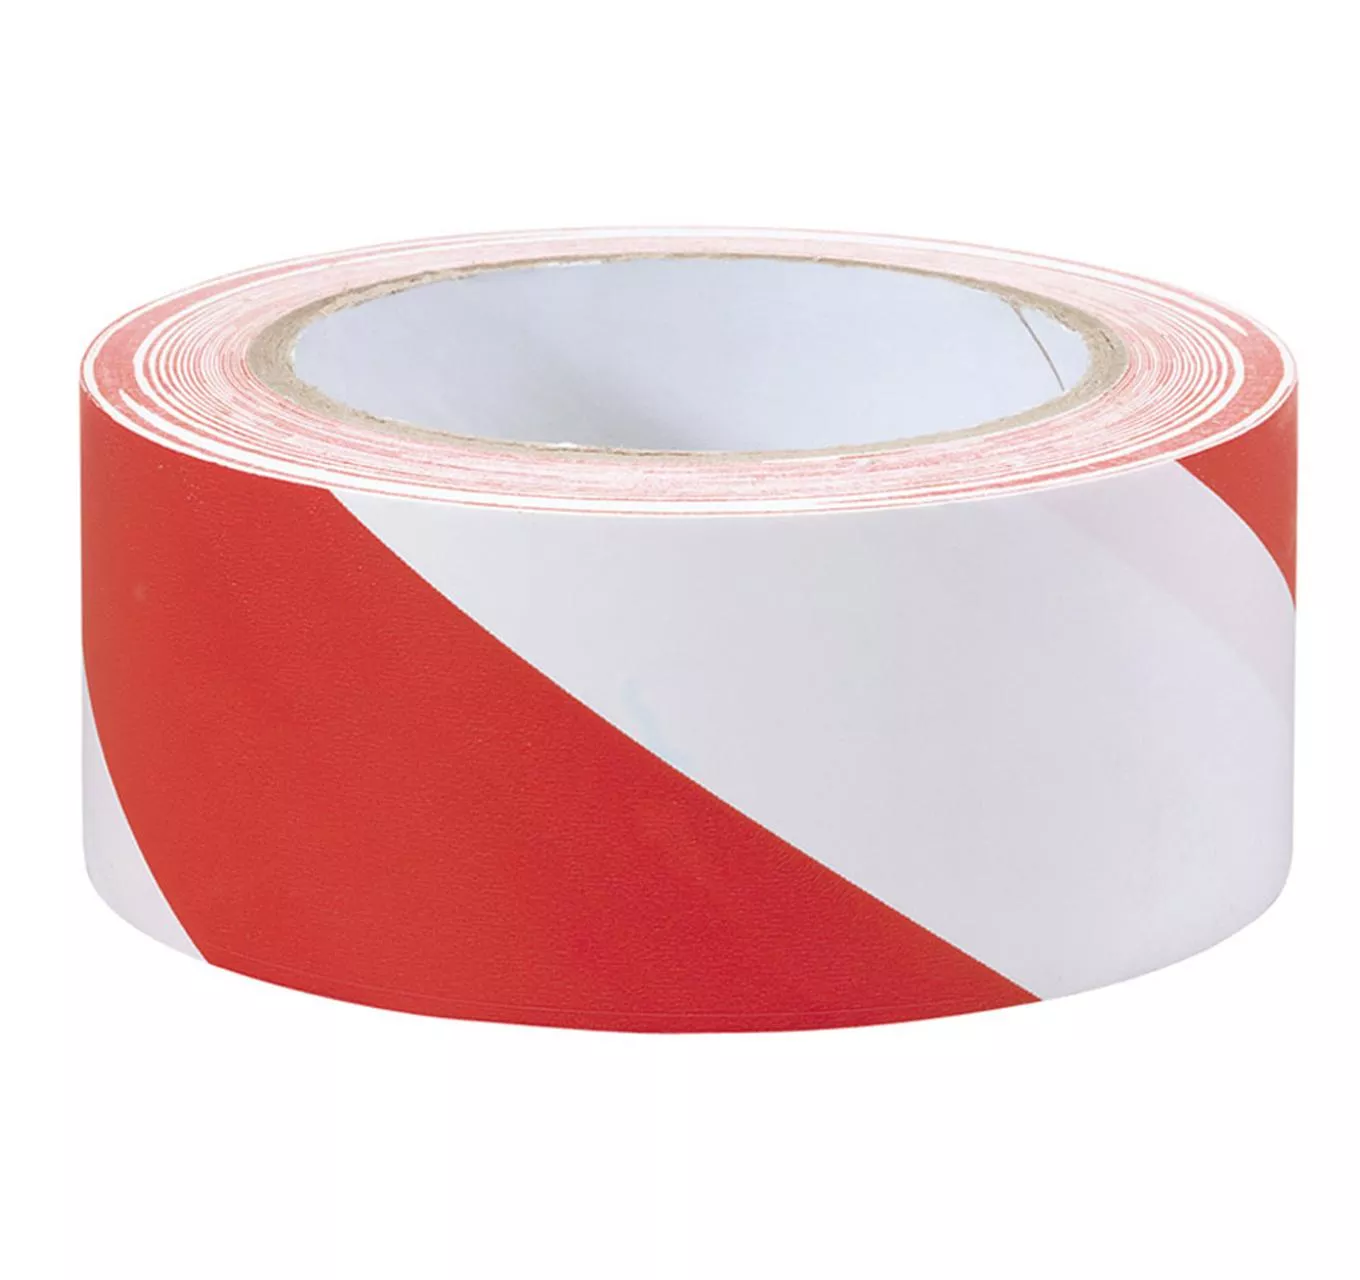 Hazard Tape - Red & White